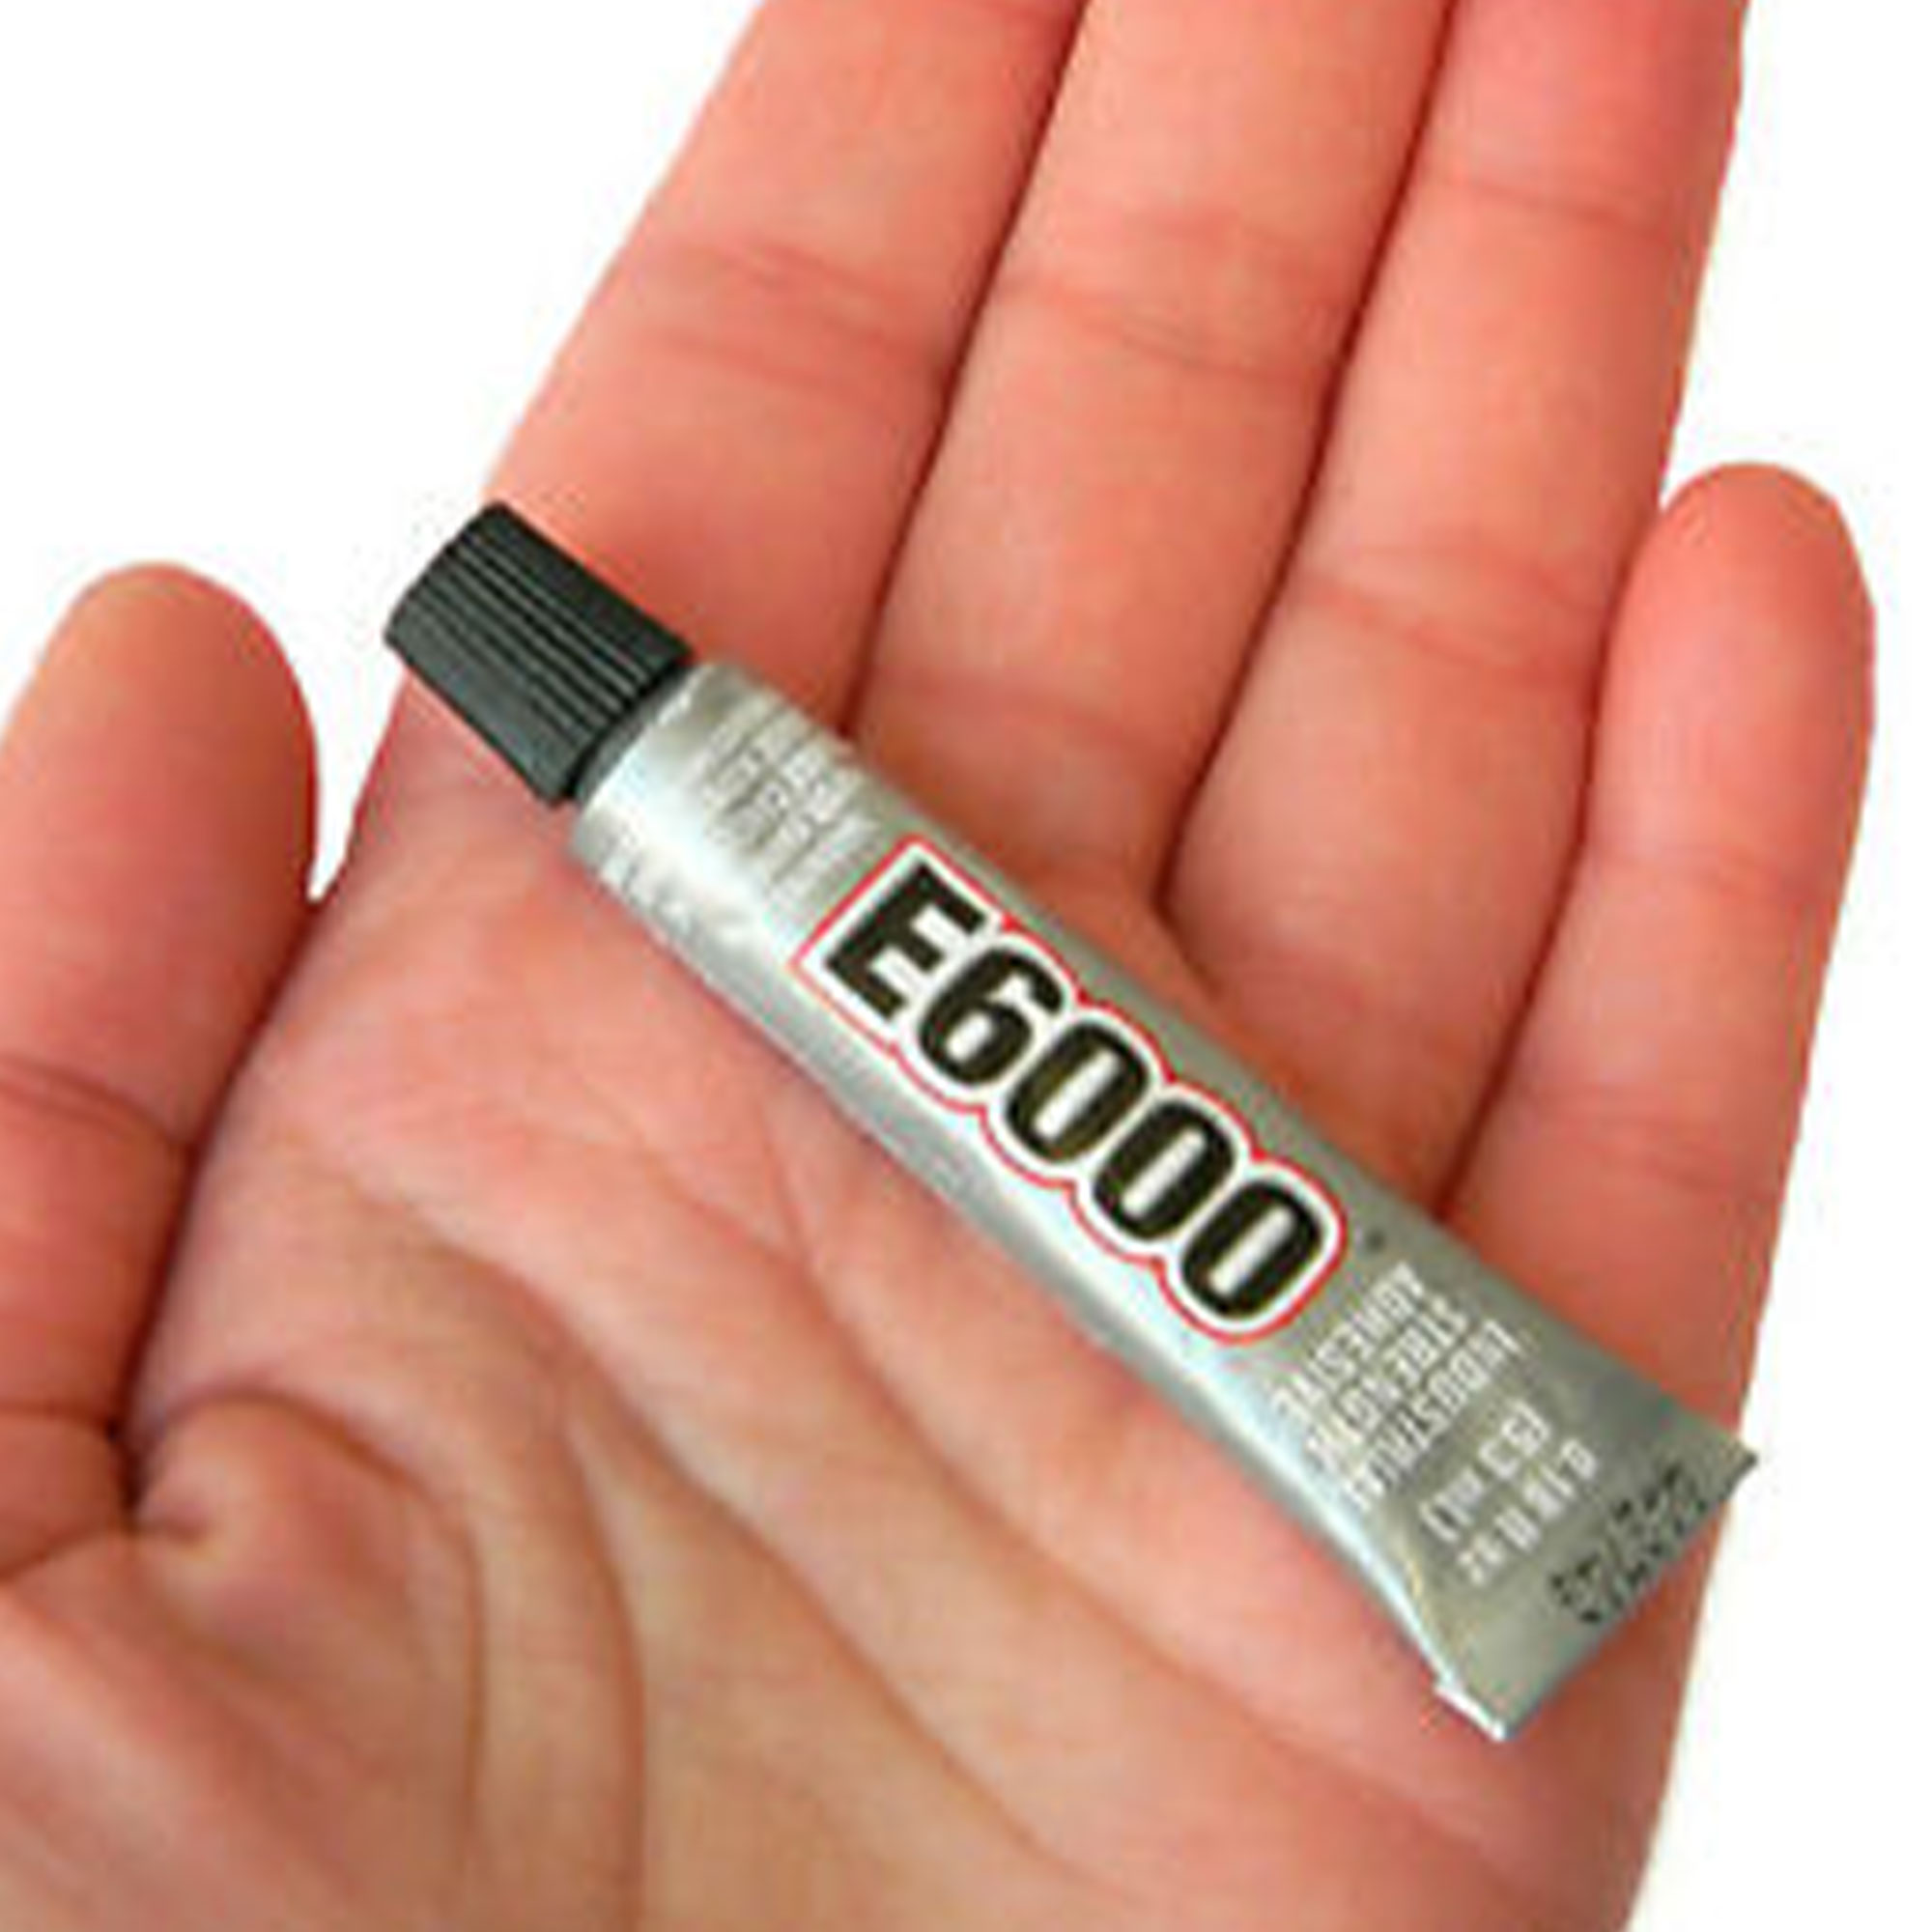 Adhesivo E6000 mini 5.3 ml – Taajo